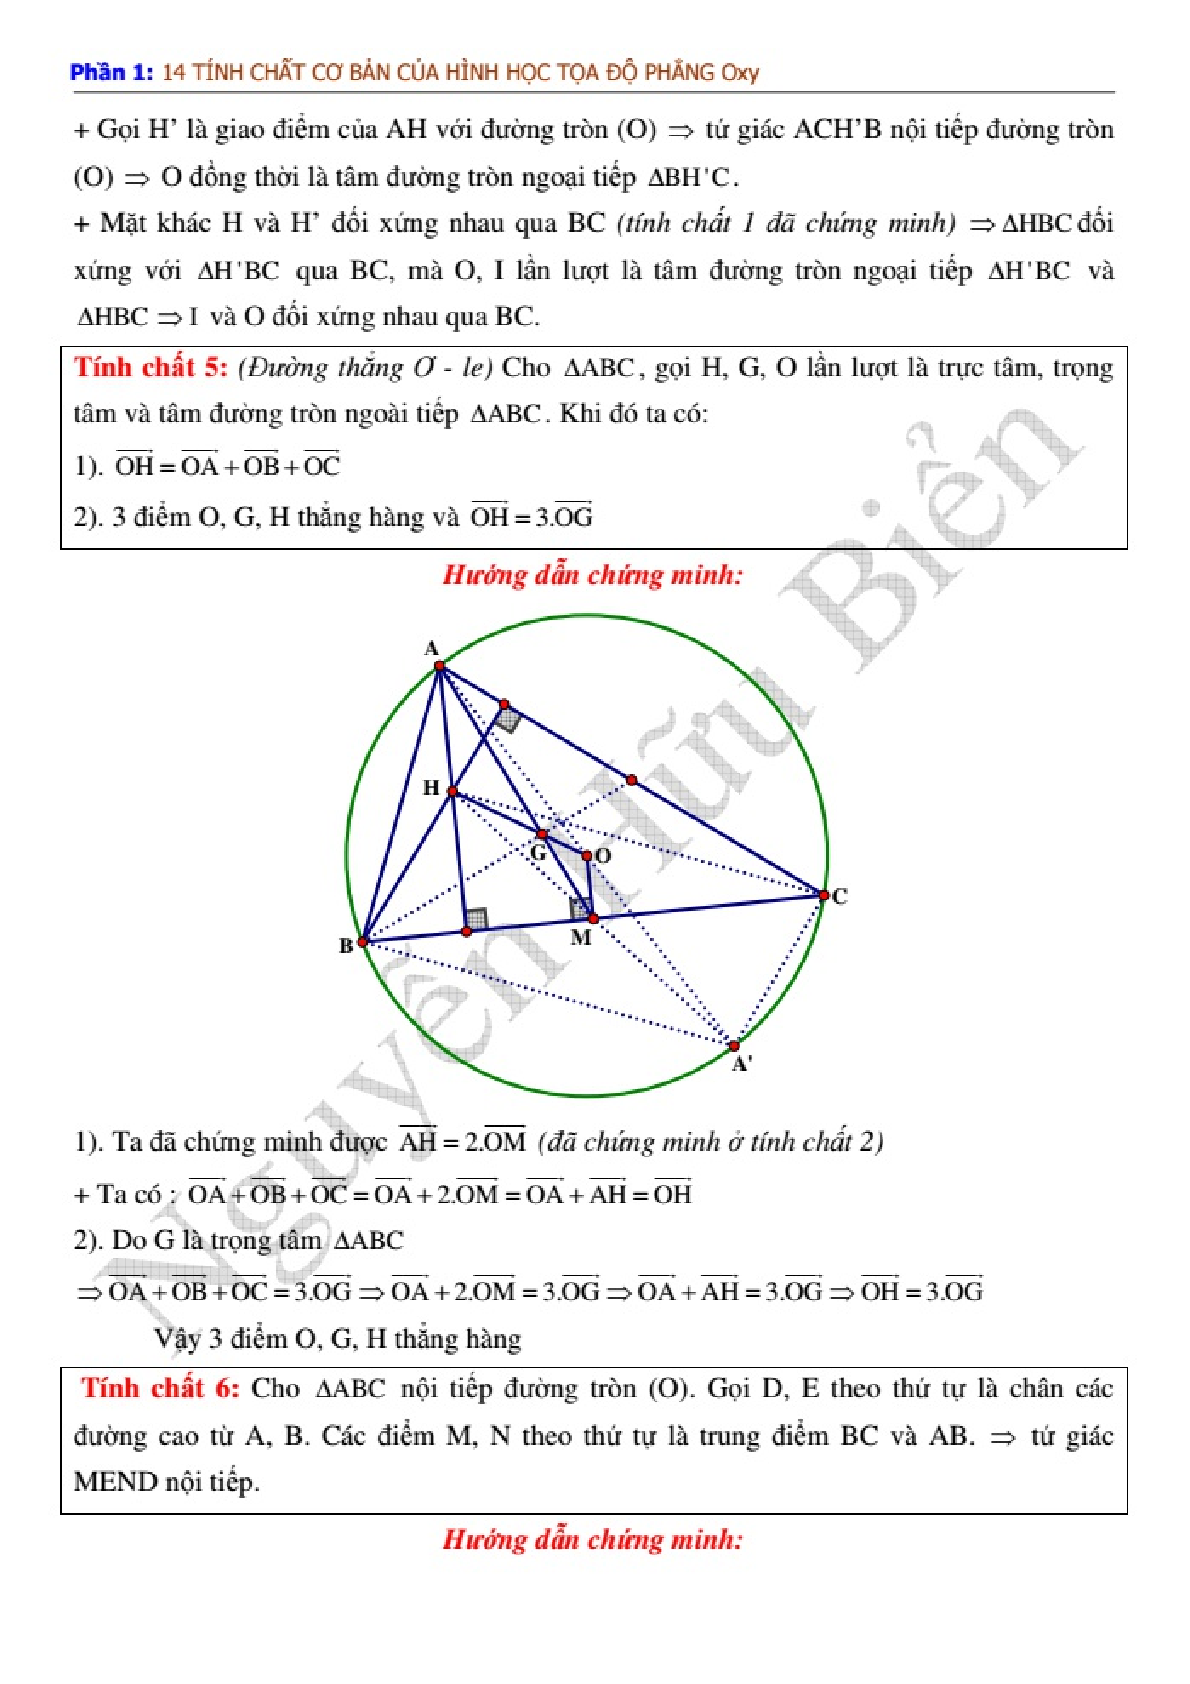 Kỹ thuật công phá hình học phẳng Oxy để giải nhanh (trang 5)